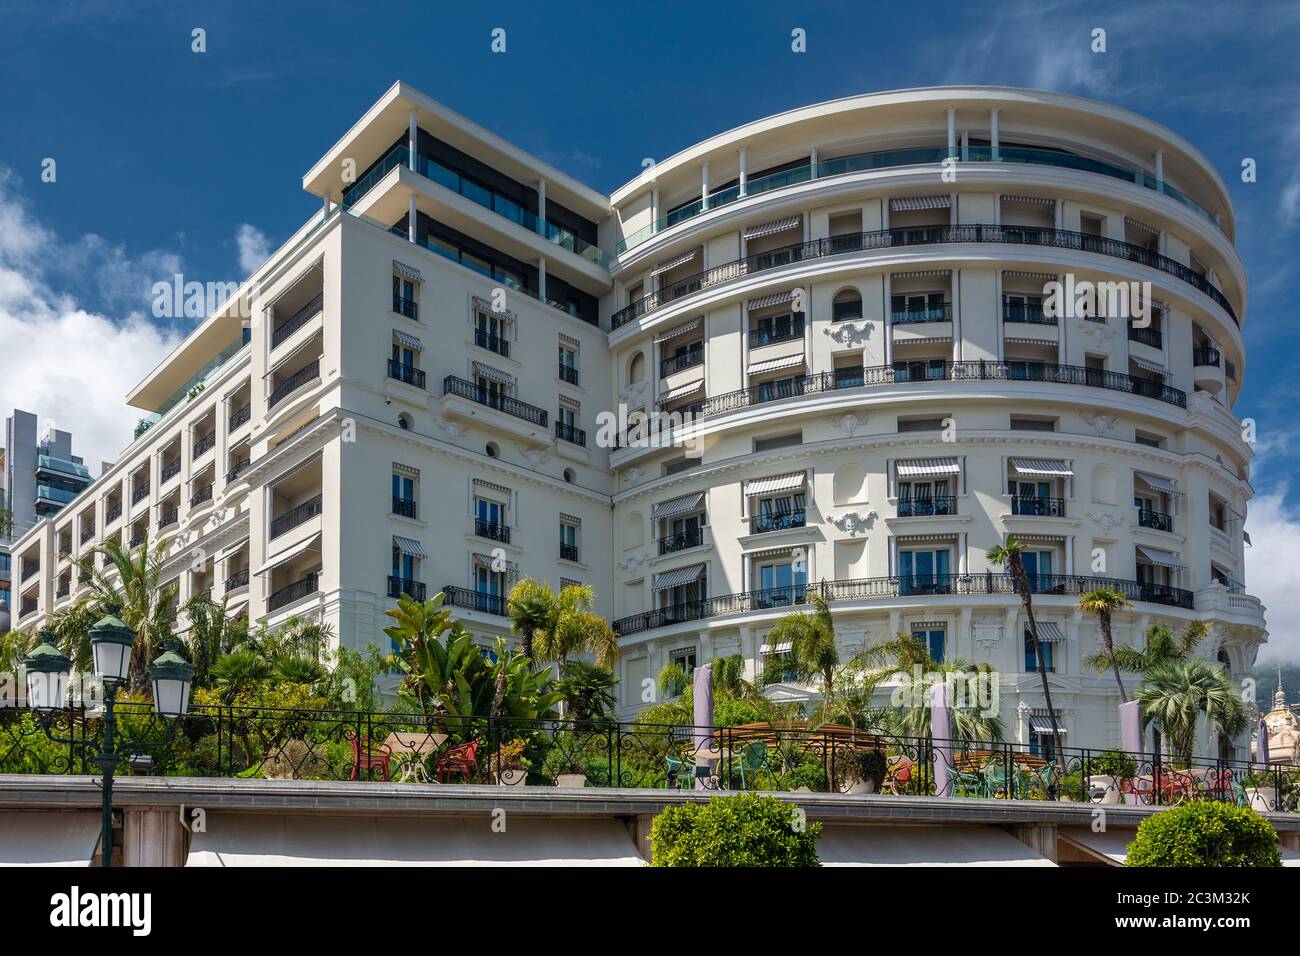 Monte Carlo, Monaco - 13. Juni 2019 : Hotel de Paris mit Luxusgeschäften. Einer der beliebtesten Orte für reiche Menschen. Stockfoto